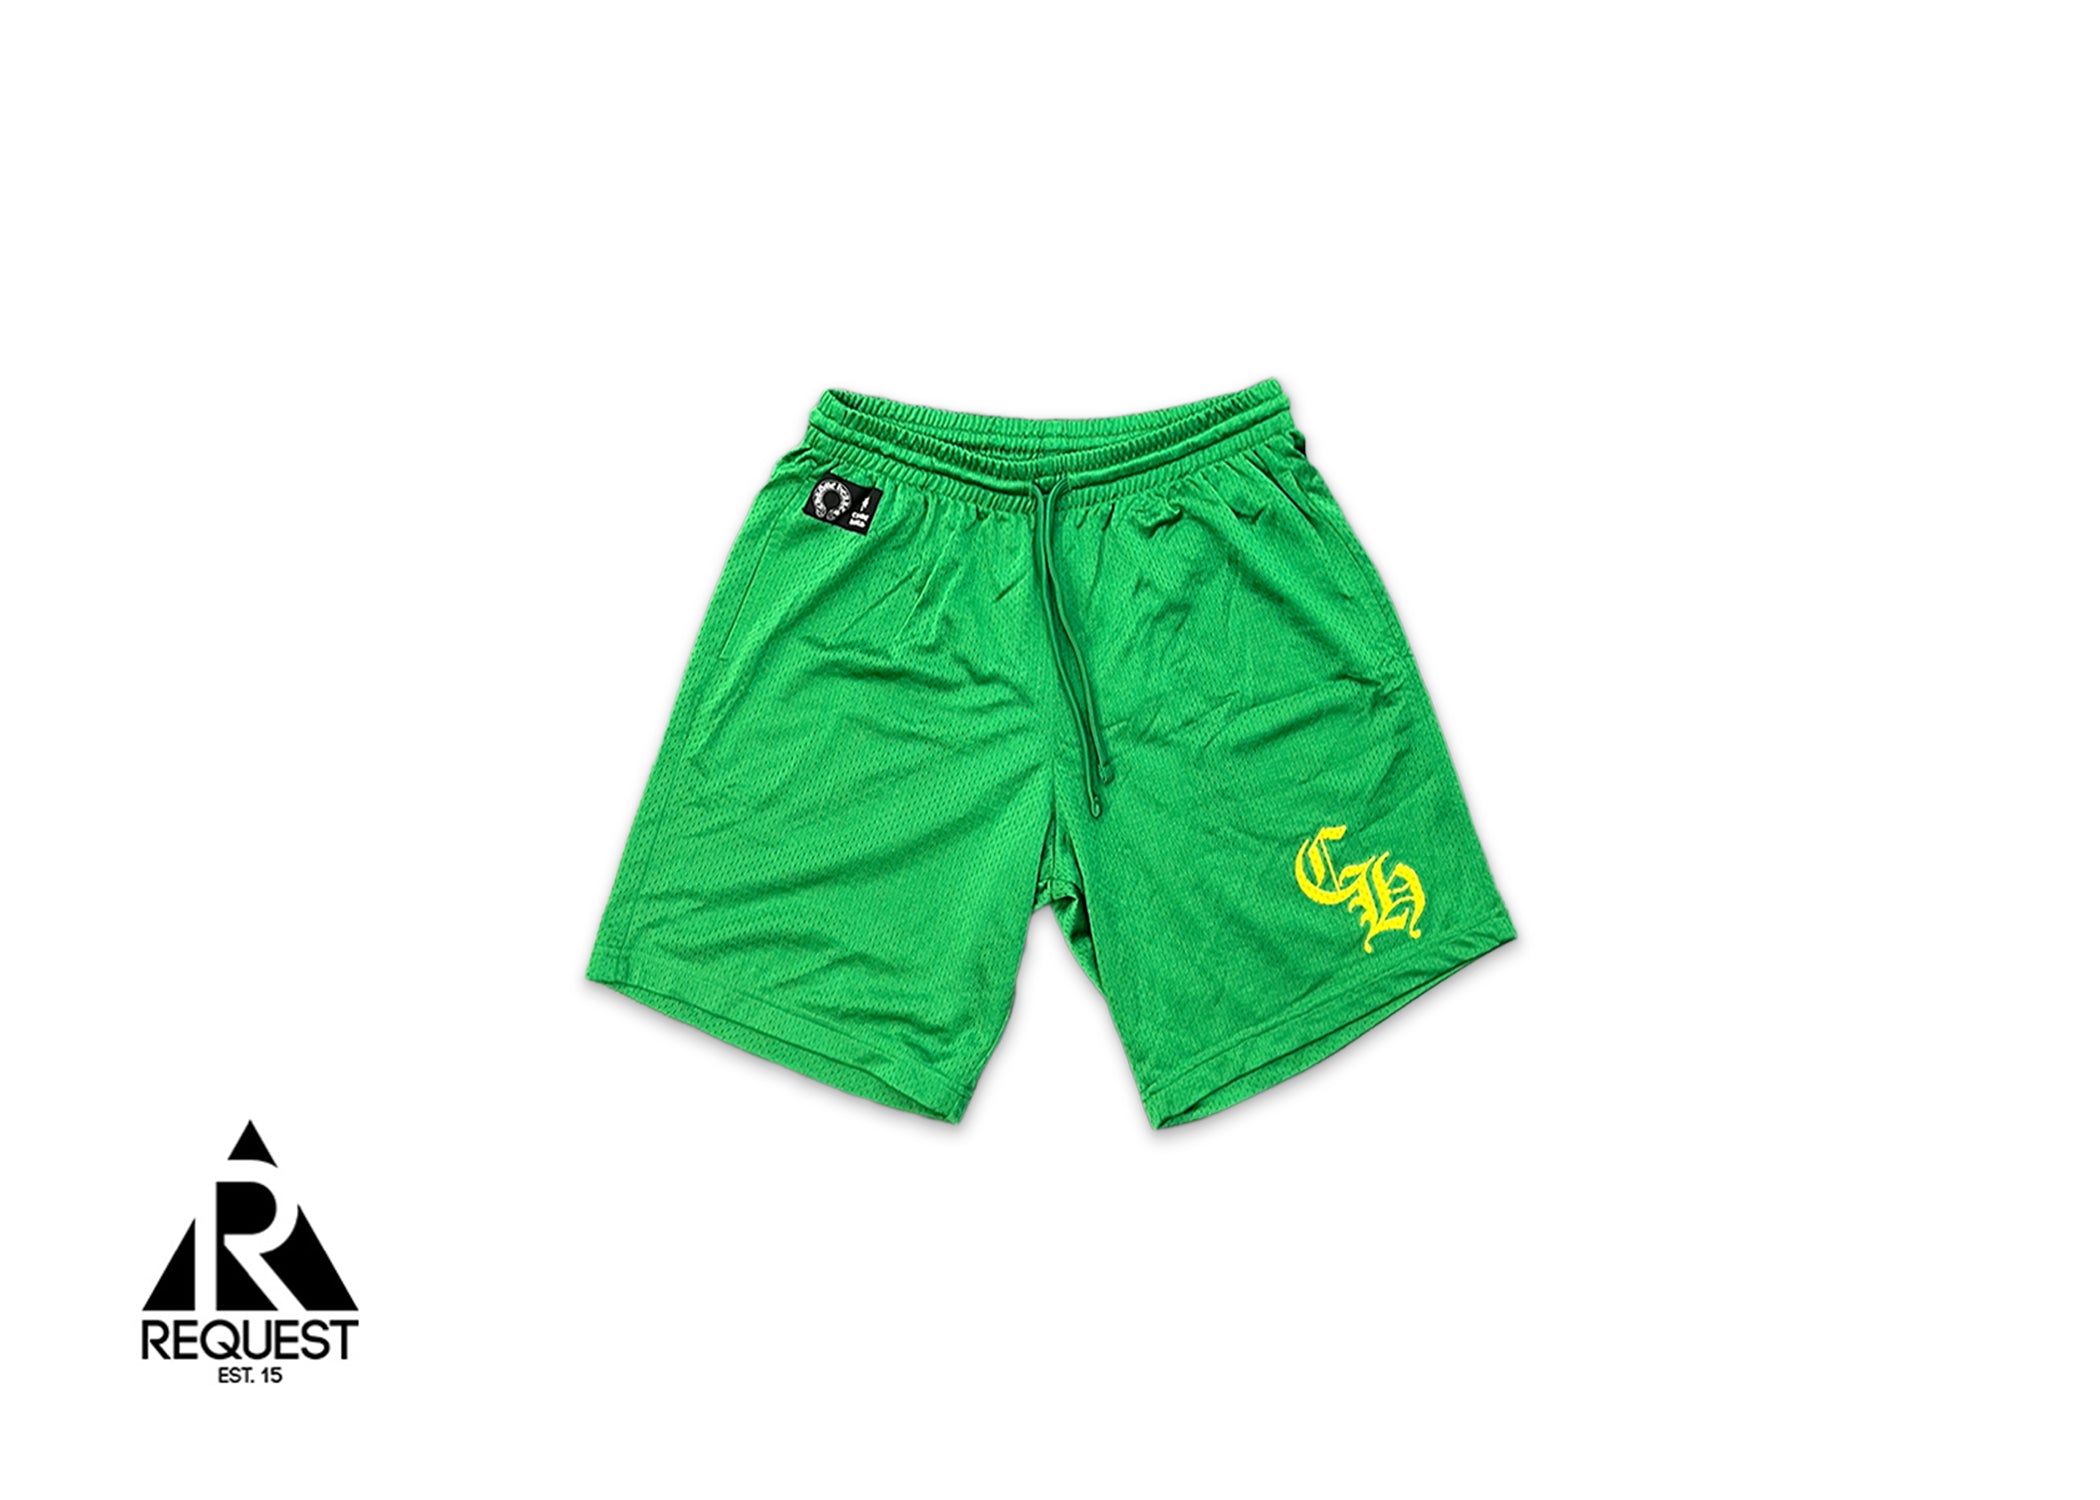 Chrome Hearts Sports Mesh Varsity Shorts “Green/Yellow”